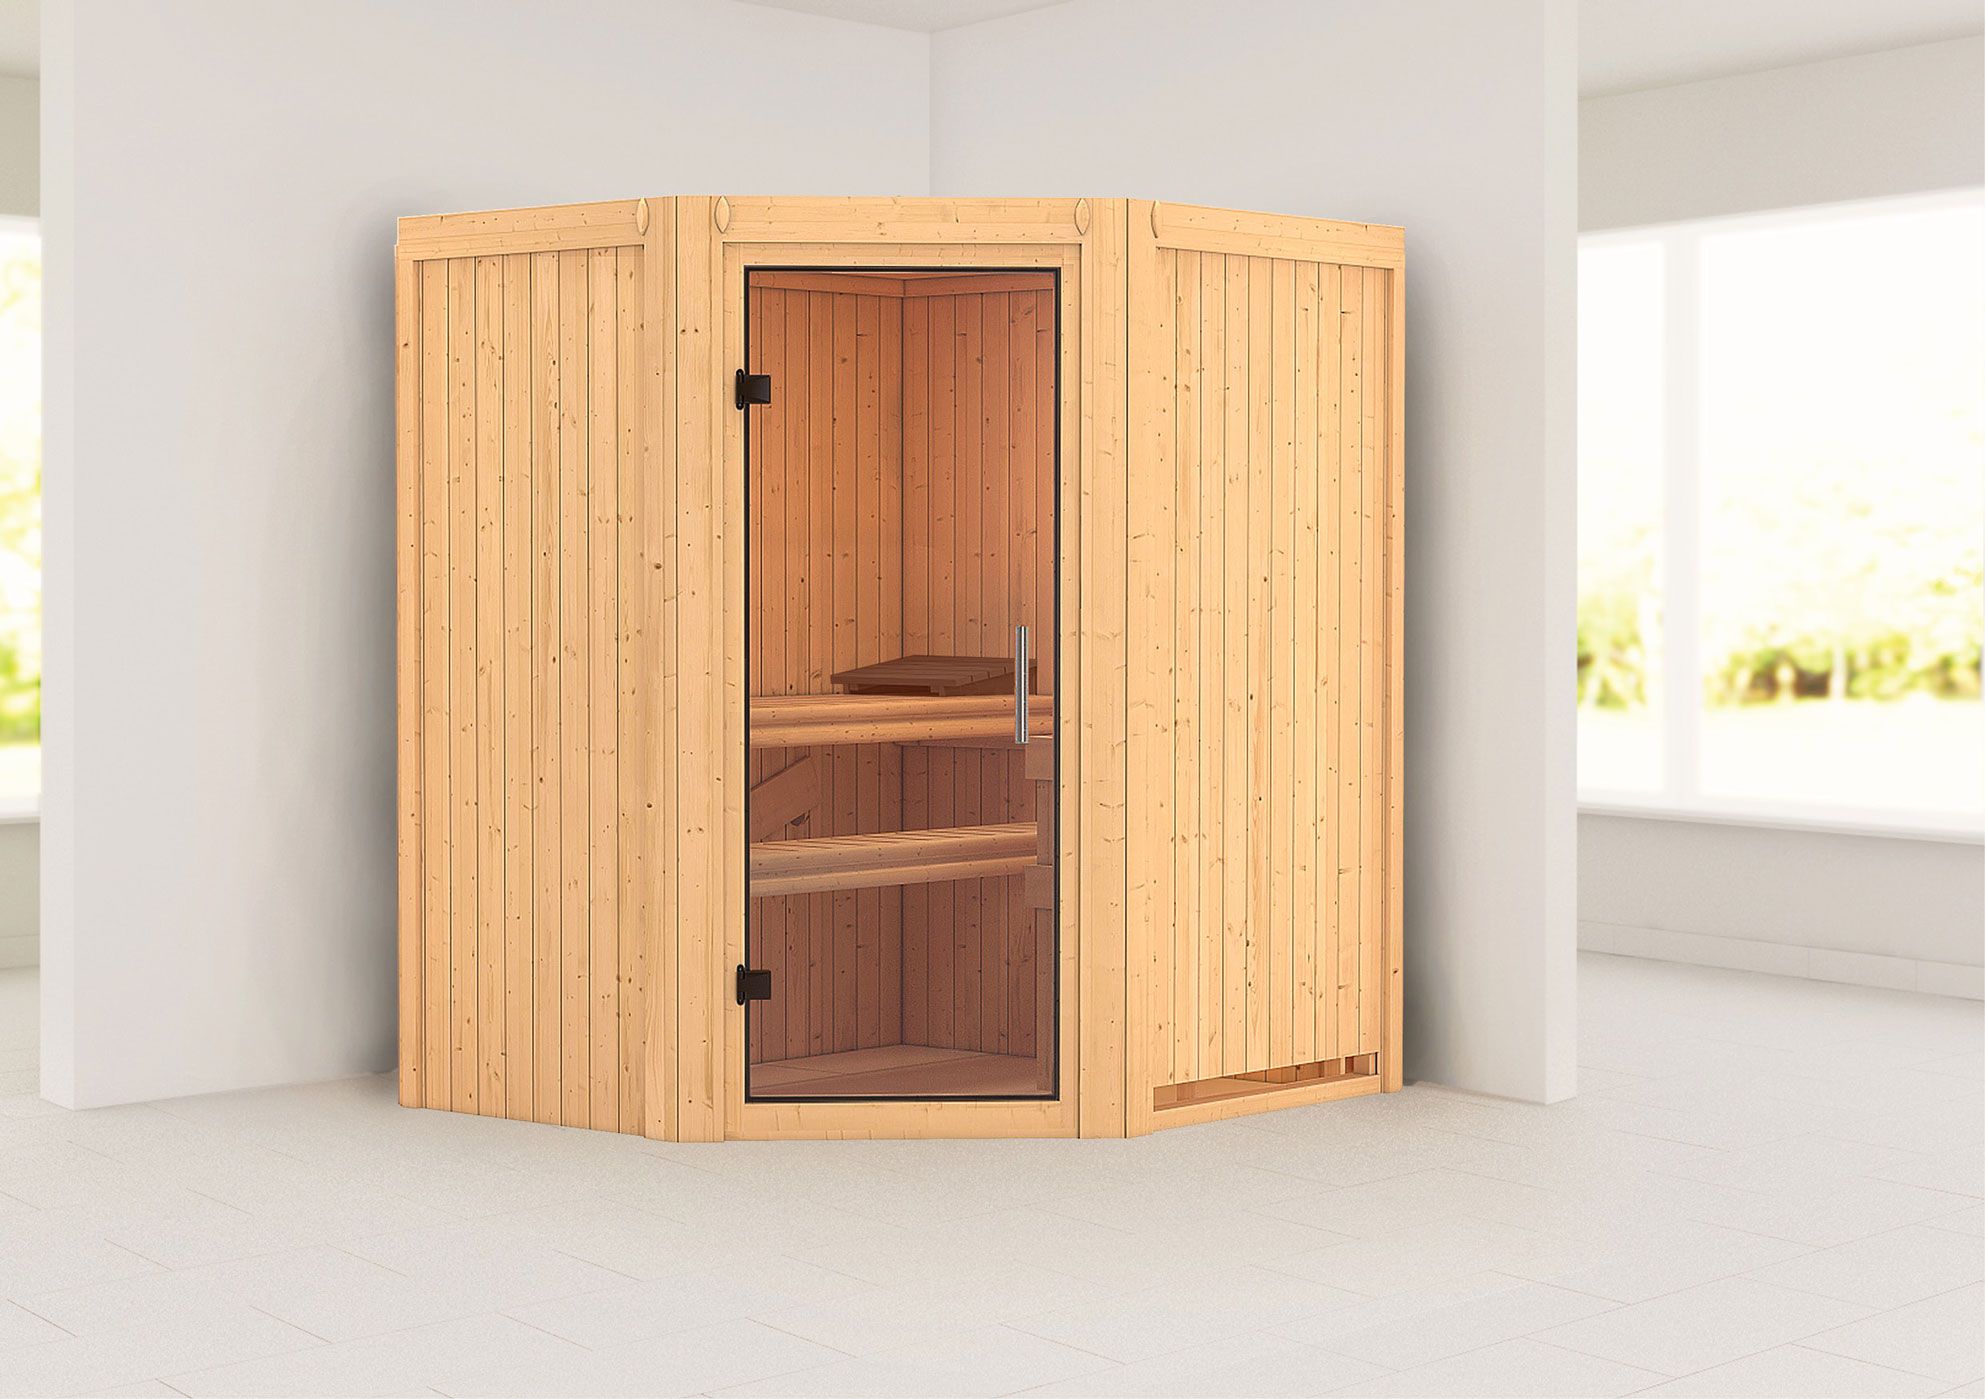 Sauna "Leevi" mit Klarglastür - Farbe: Natur - 170 x 151 x 198 cm (B x T x H)